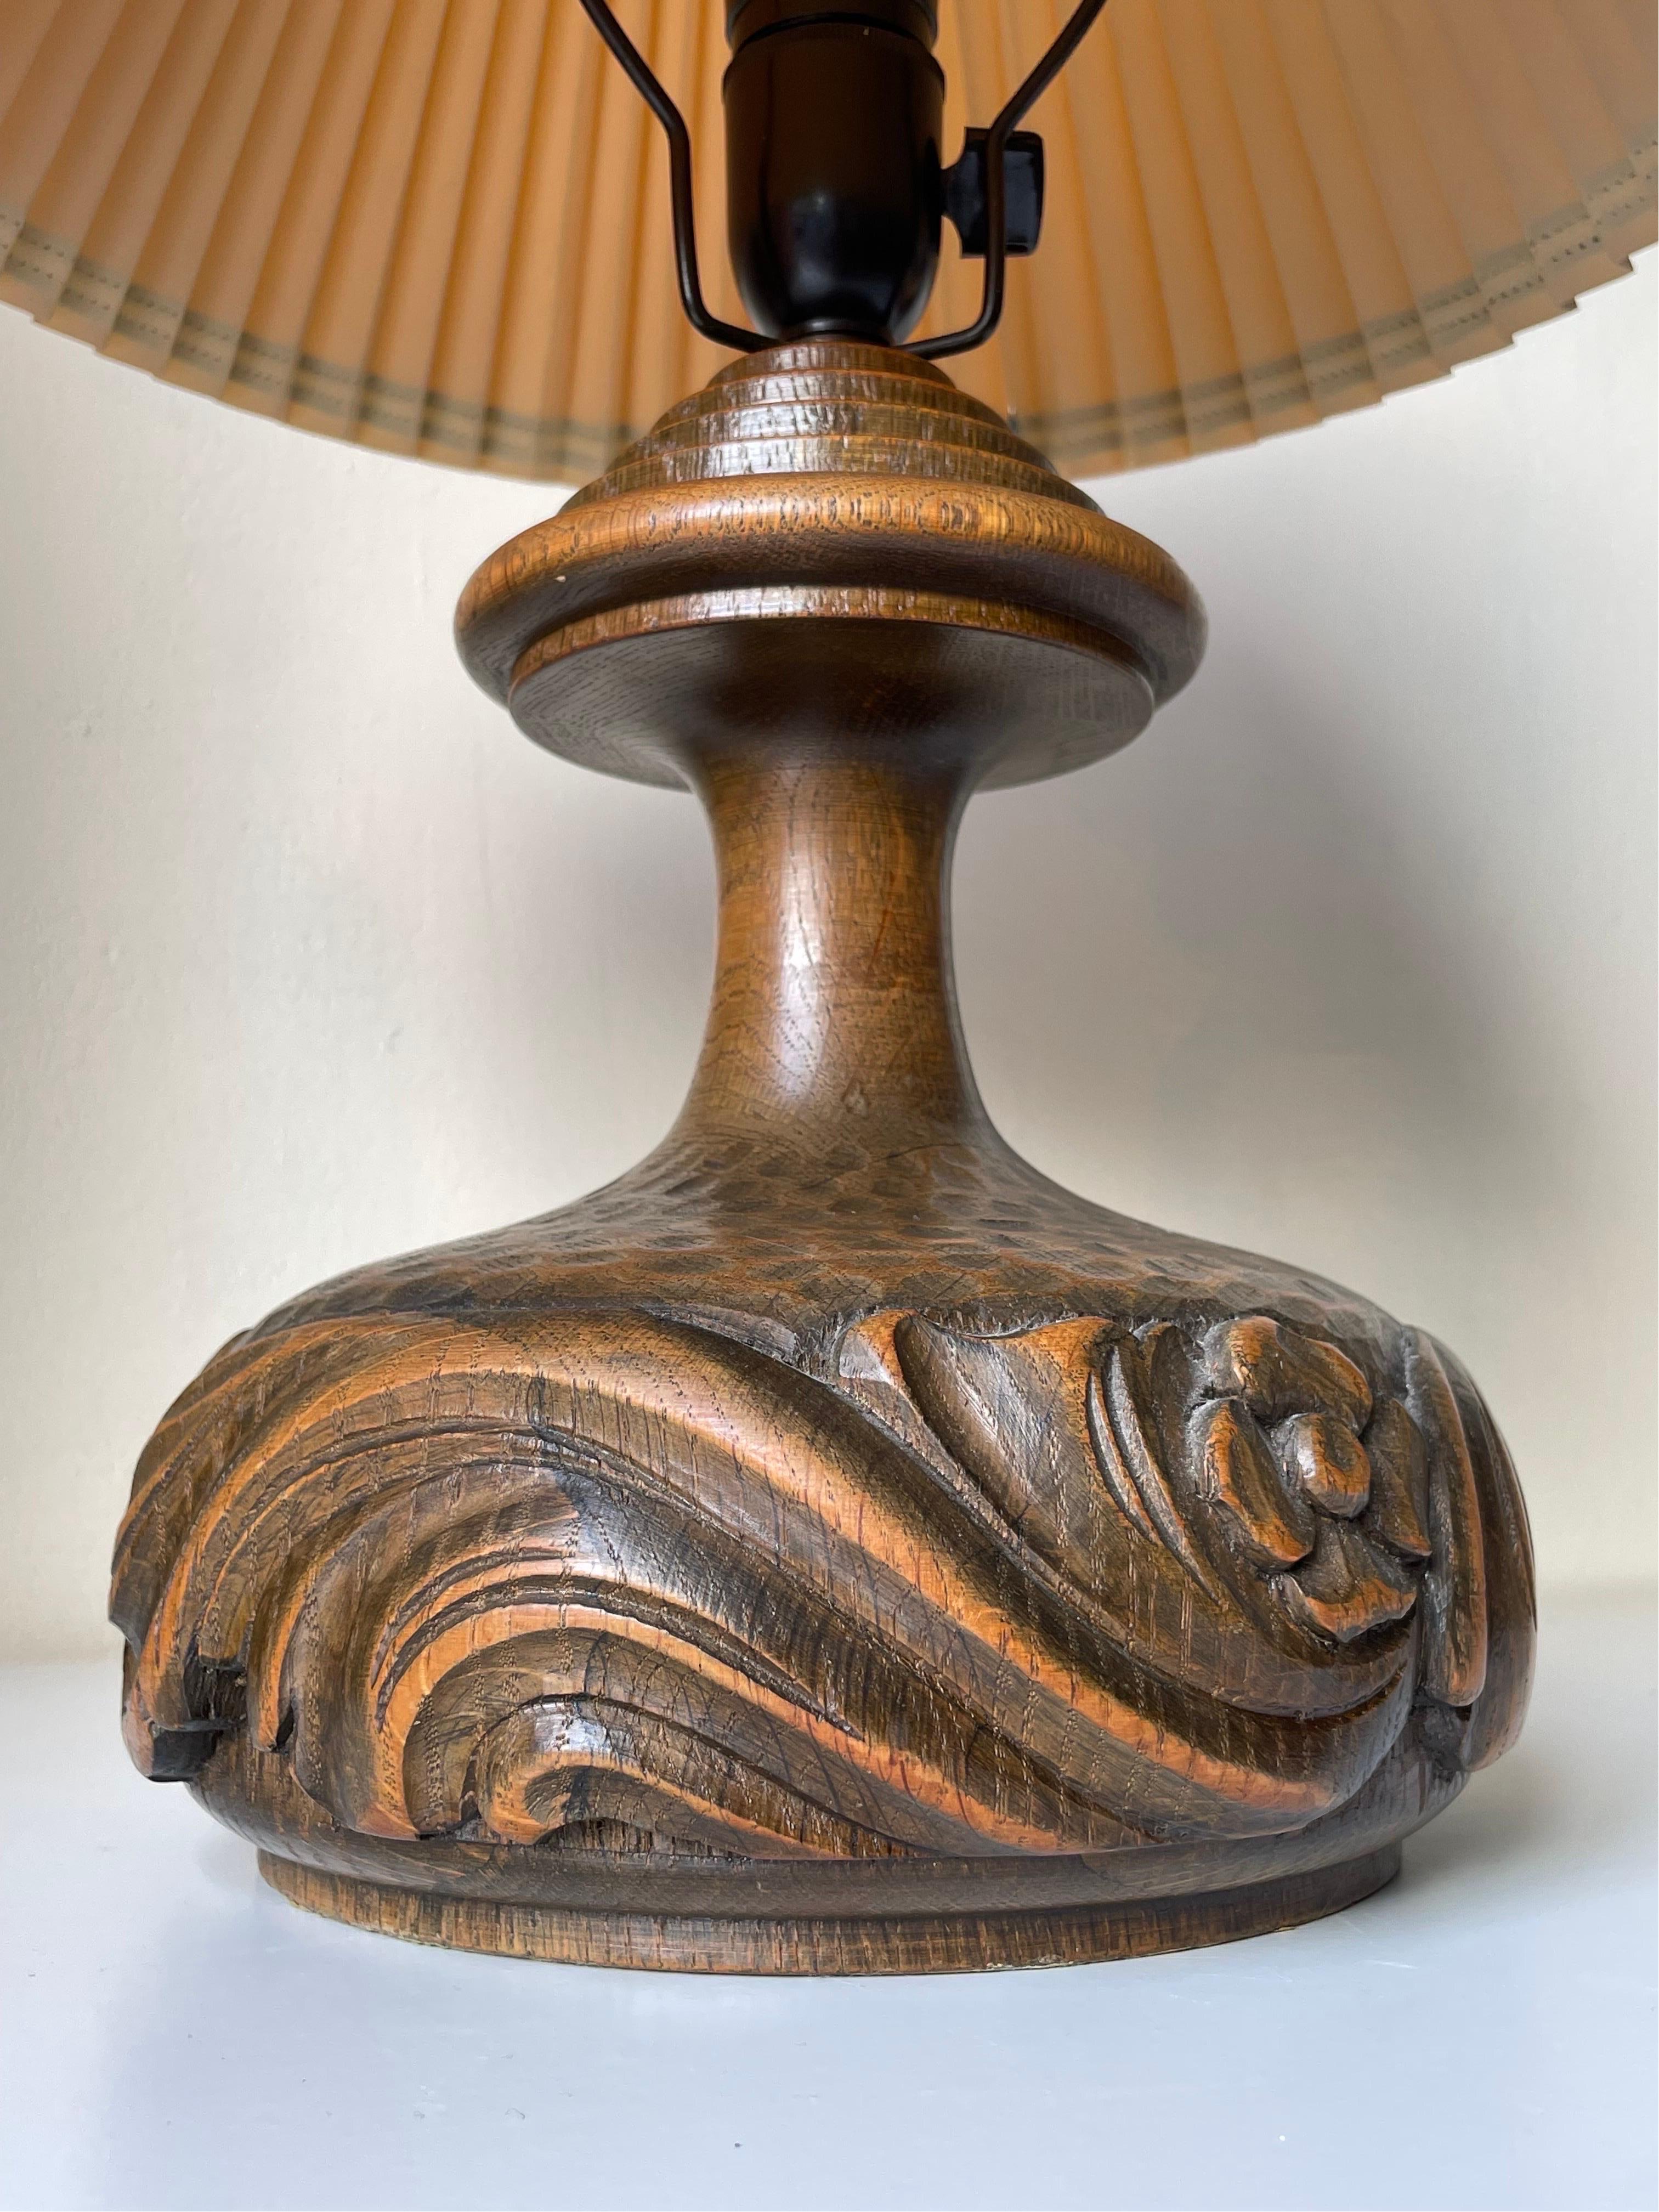 Lampe de table des années 1940 en bois massif laqué, avec des décorations organiques tourbillonnantes en relief sculptées à la main autour du corps lourd. Encolure lisse et élancée avec un haut architectural à larges paliers. Armature noire